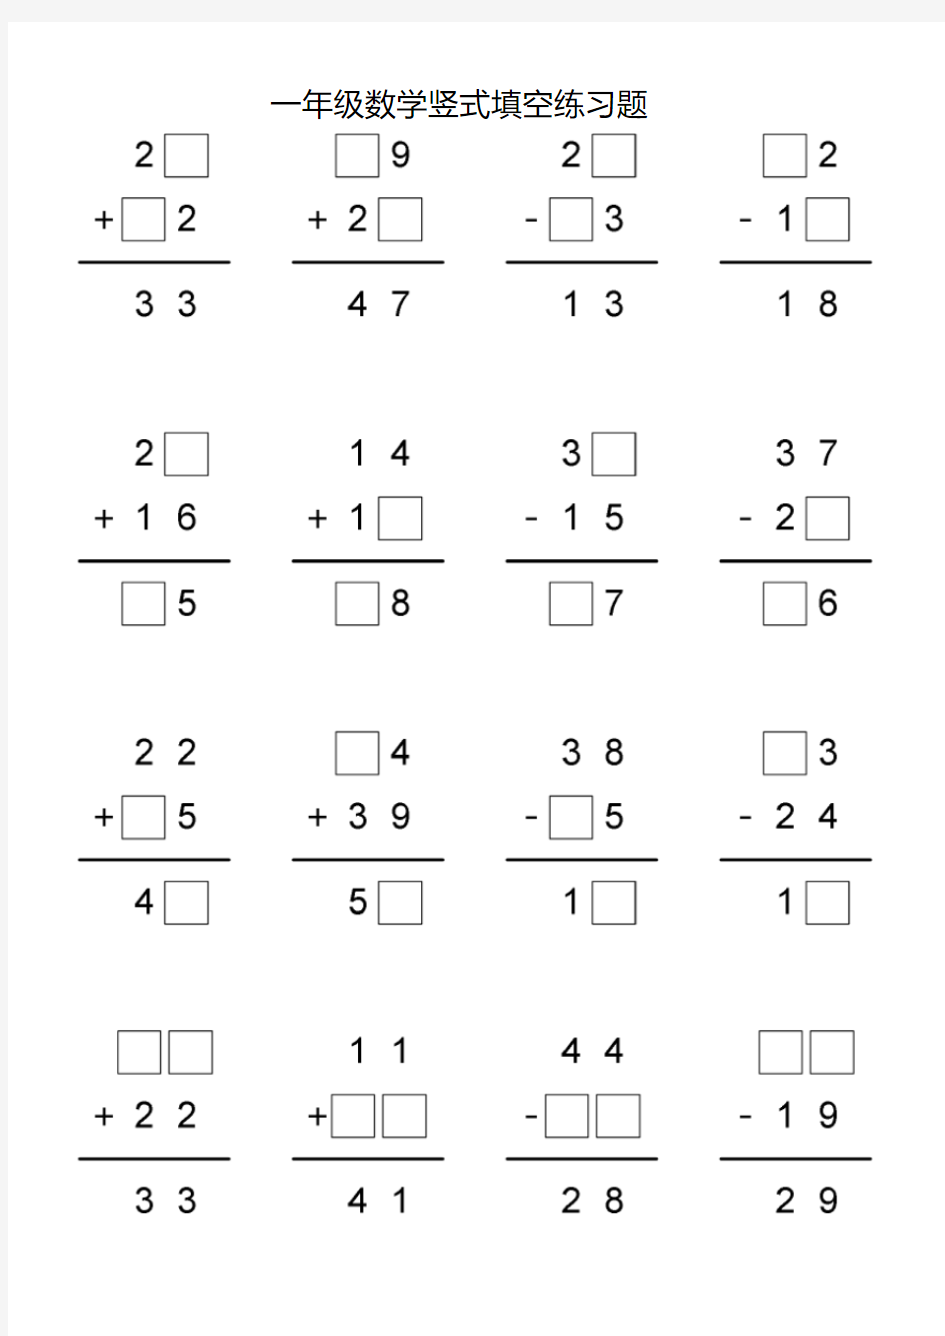 【经典】实验小学一年级数学竖式填空练习题